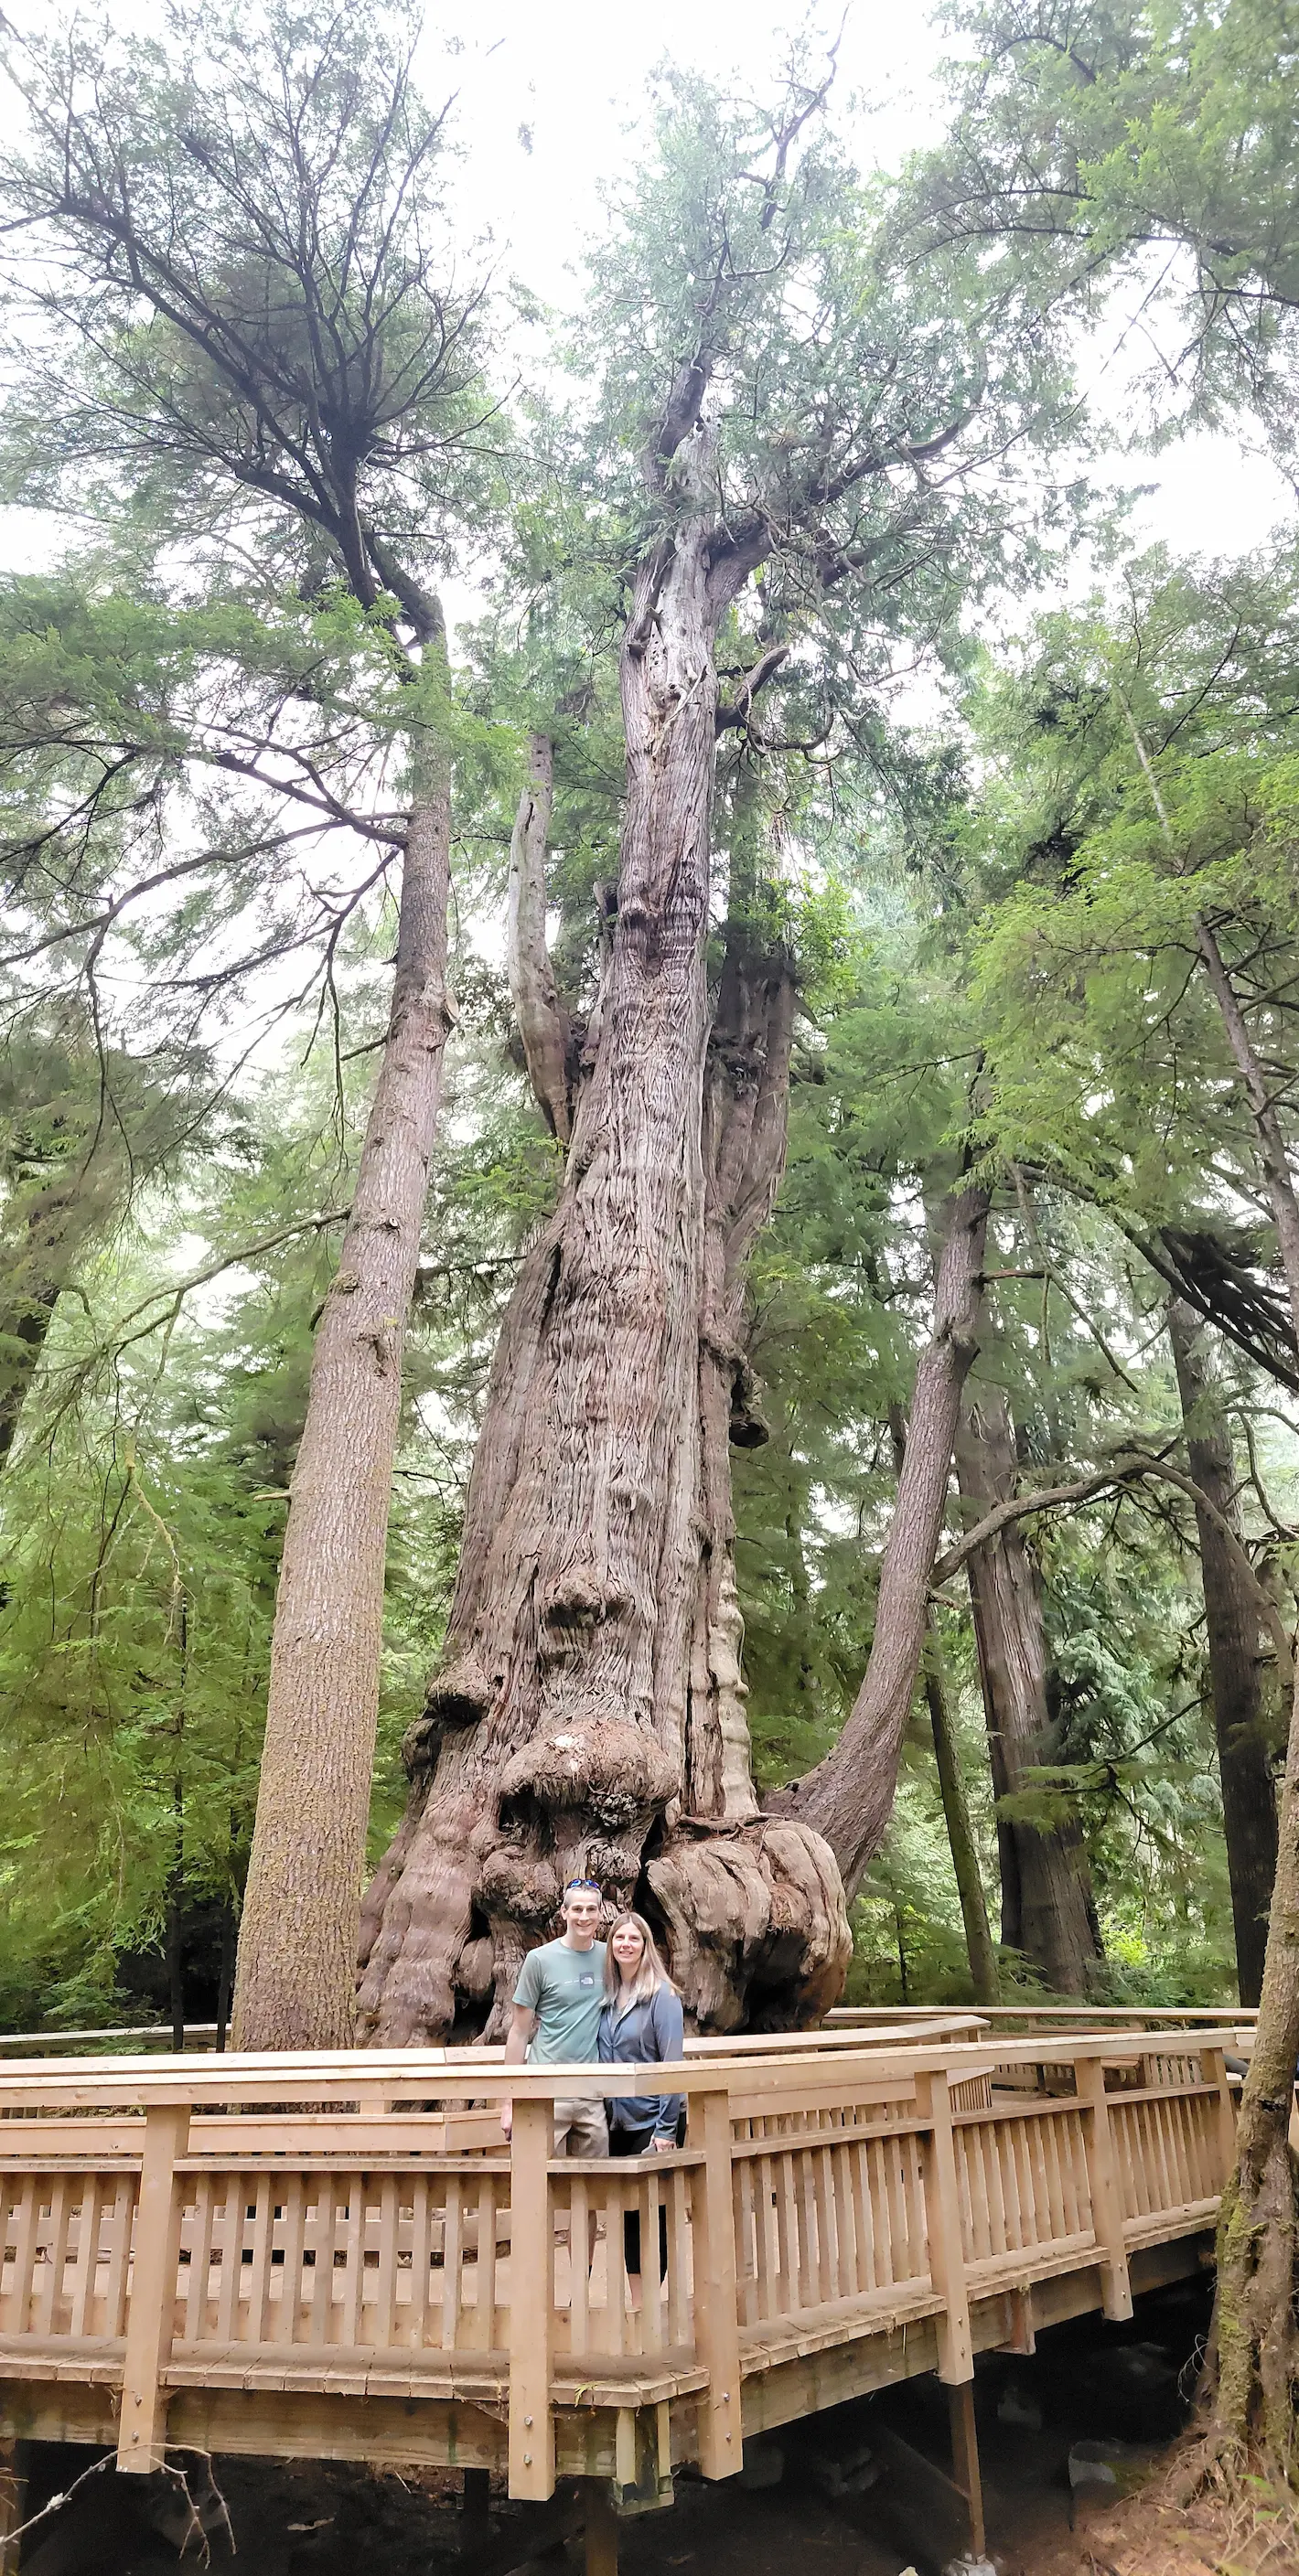 Rockaway Big Tree stands at 154 feet tall.